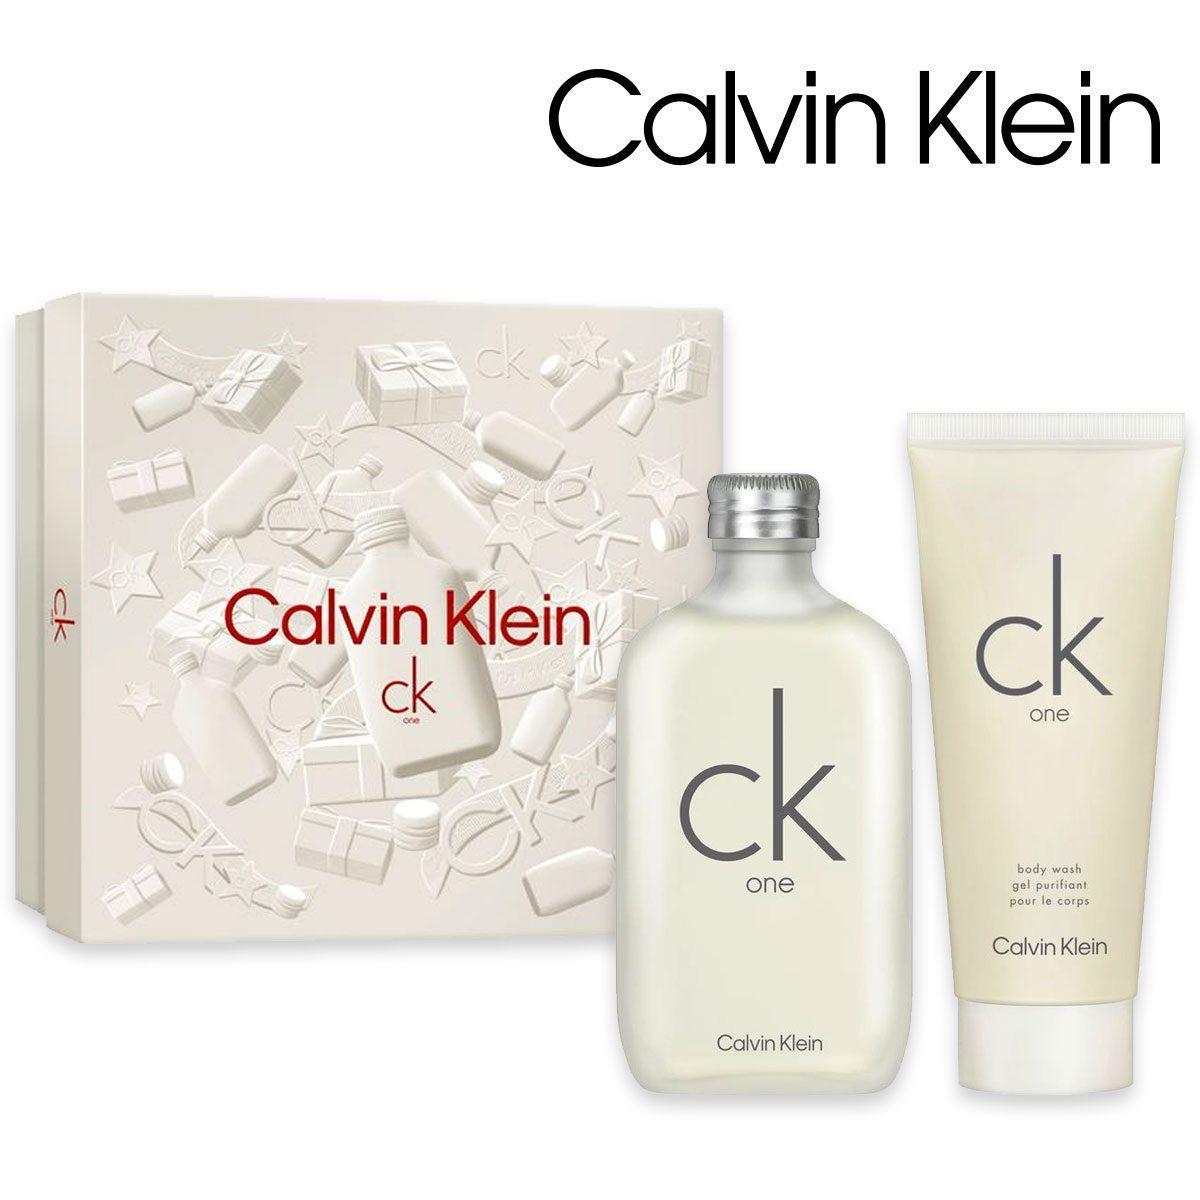 Calvin klein Ck conf. one edt 100 ml + body wash 100 ml